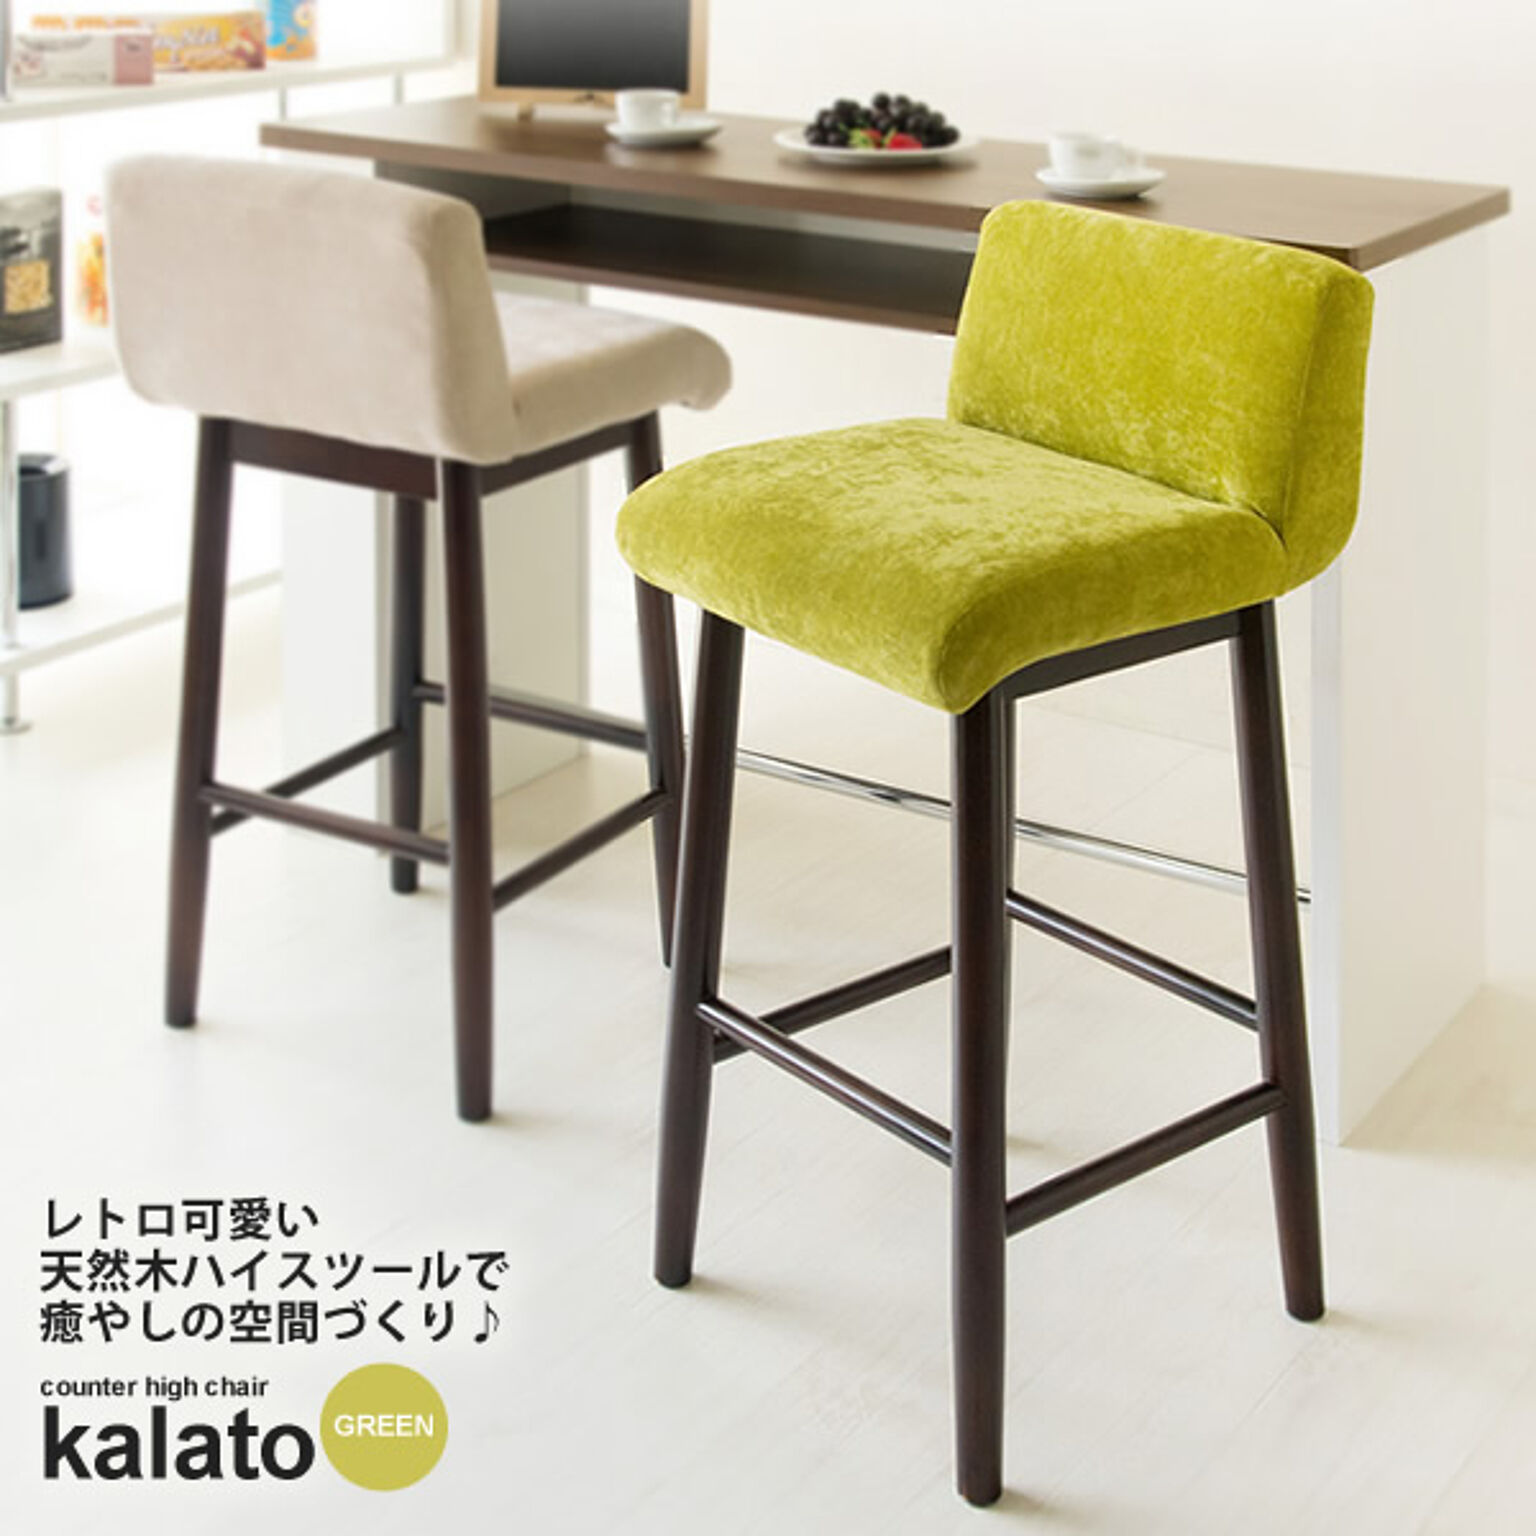 カウンターチェア ハイチェア バースツール ： グリーン【kalato】 グリーン(green) (レトロモダン) 椅子 いす イス リビング キッチン ダイニング 